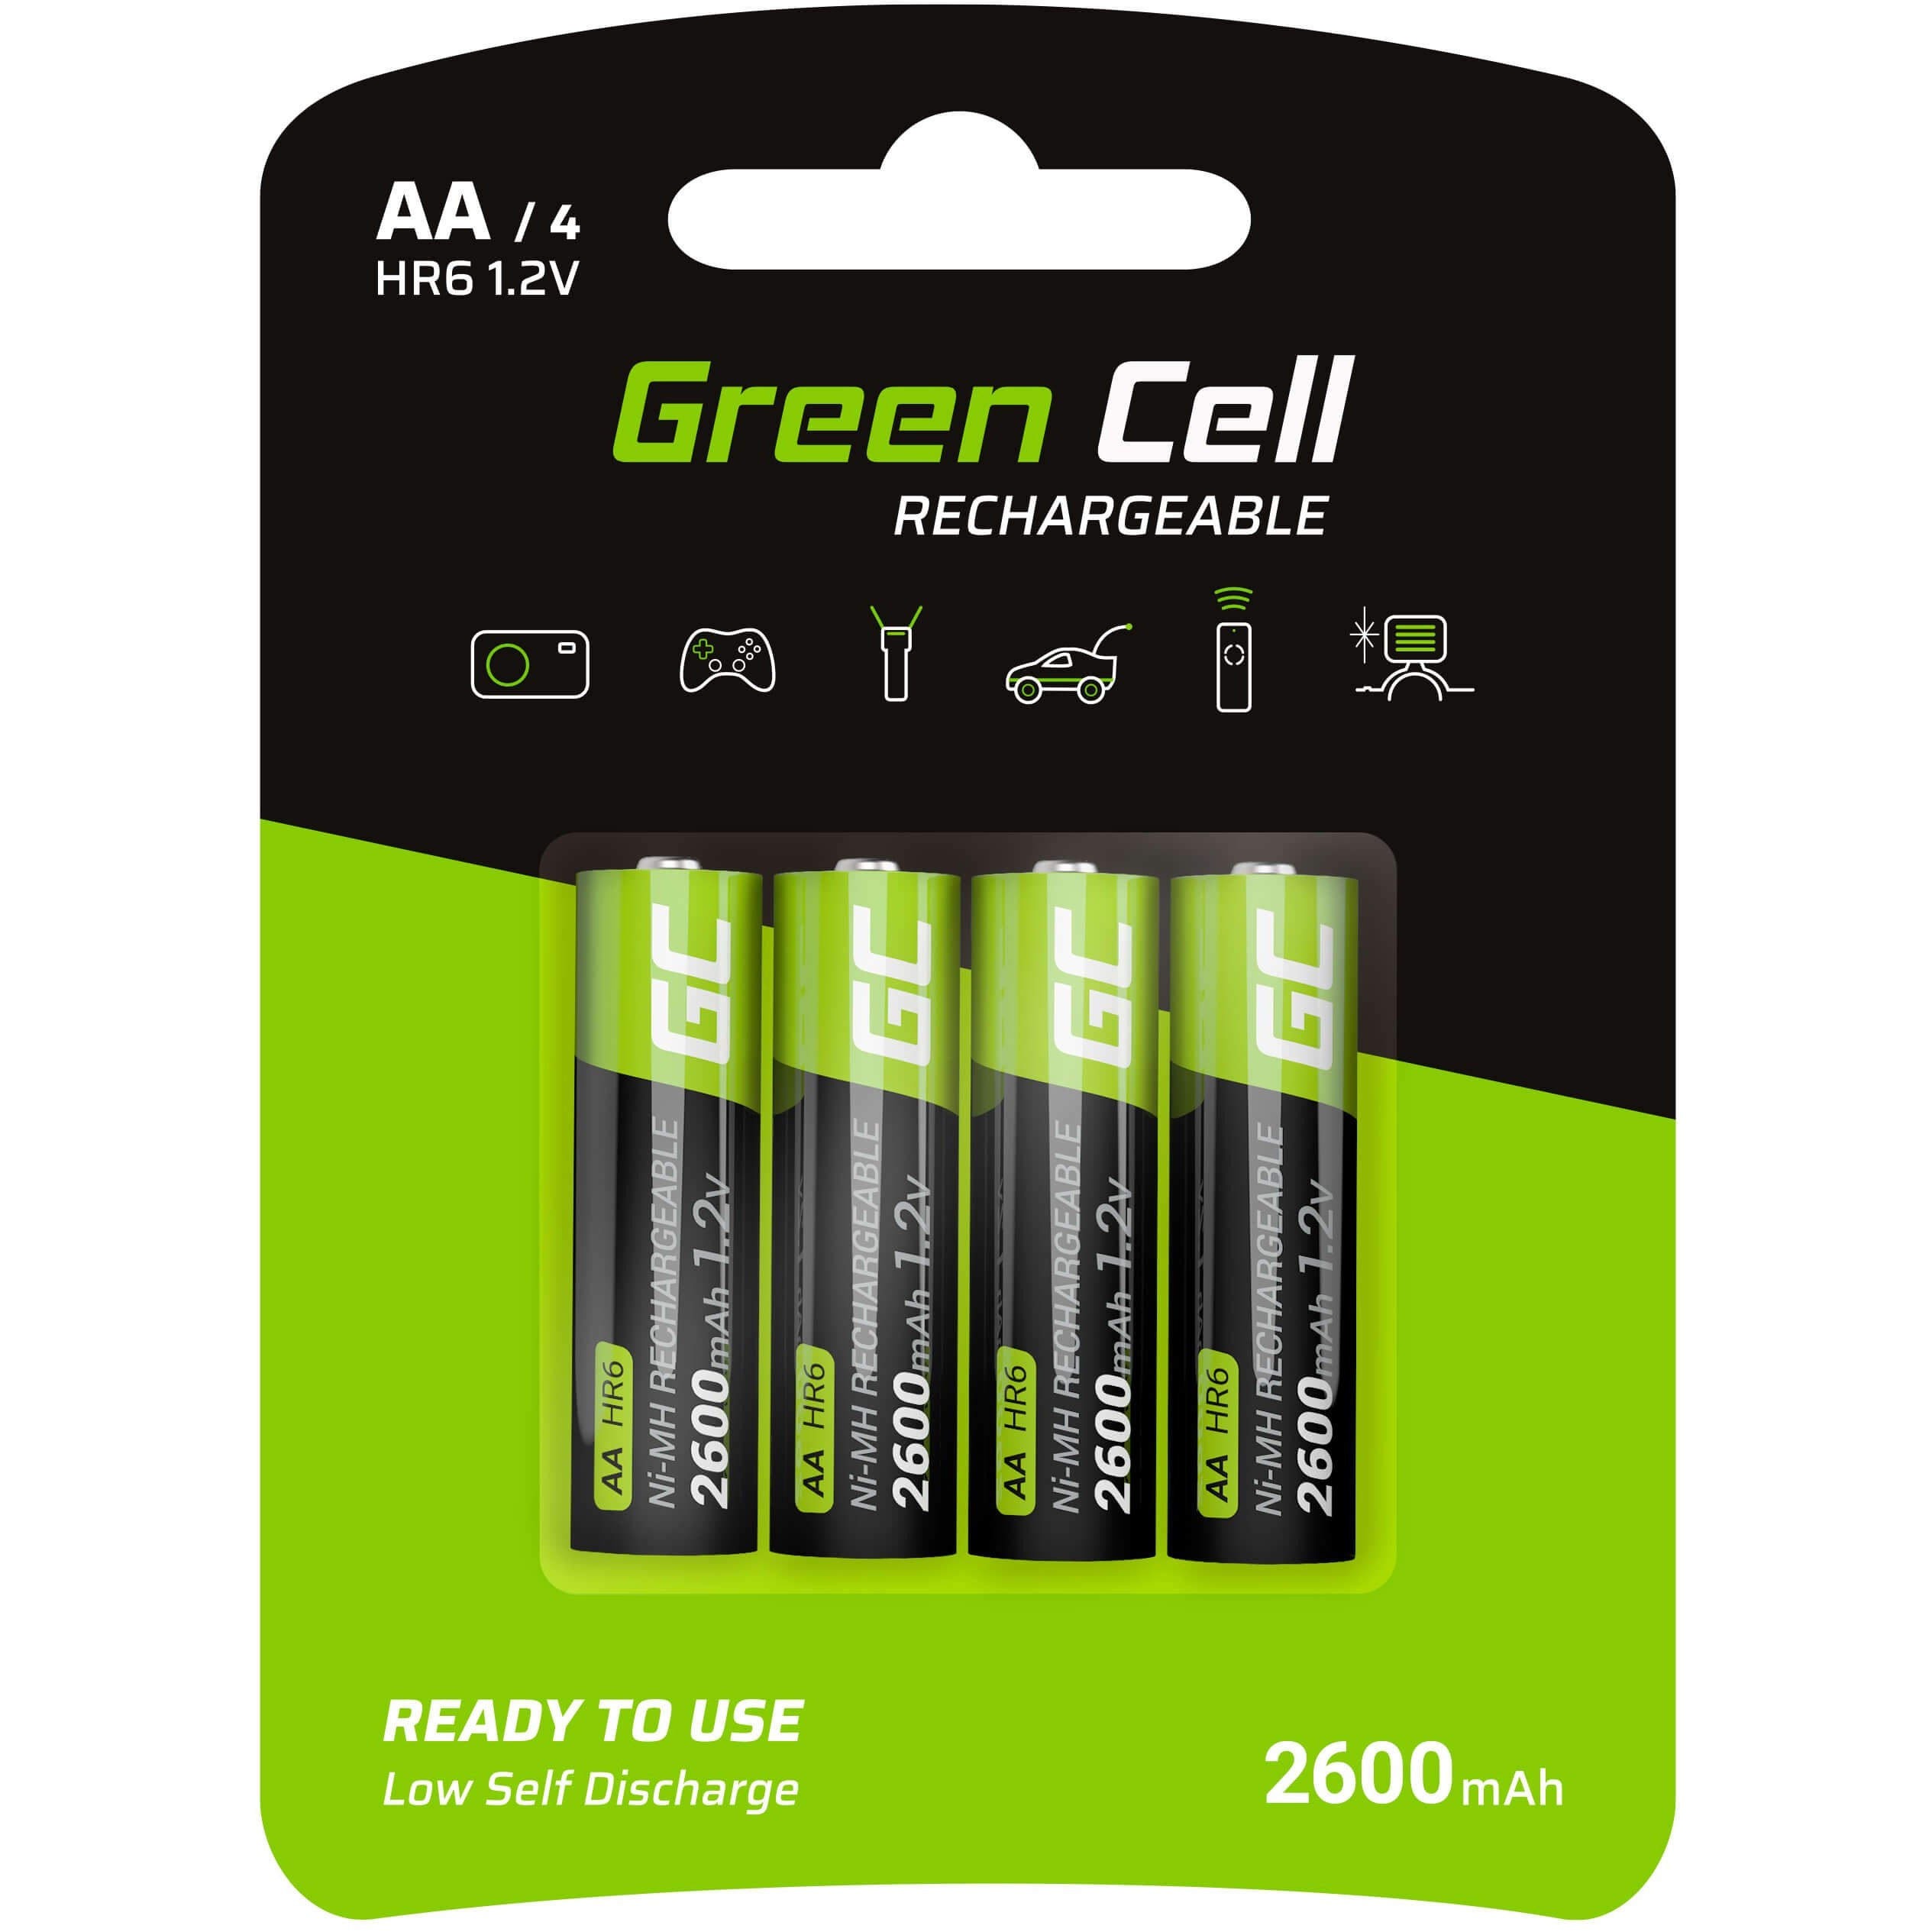 Green Cell GR01 household battery - GR01